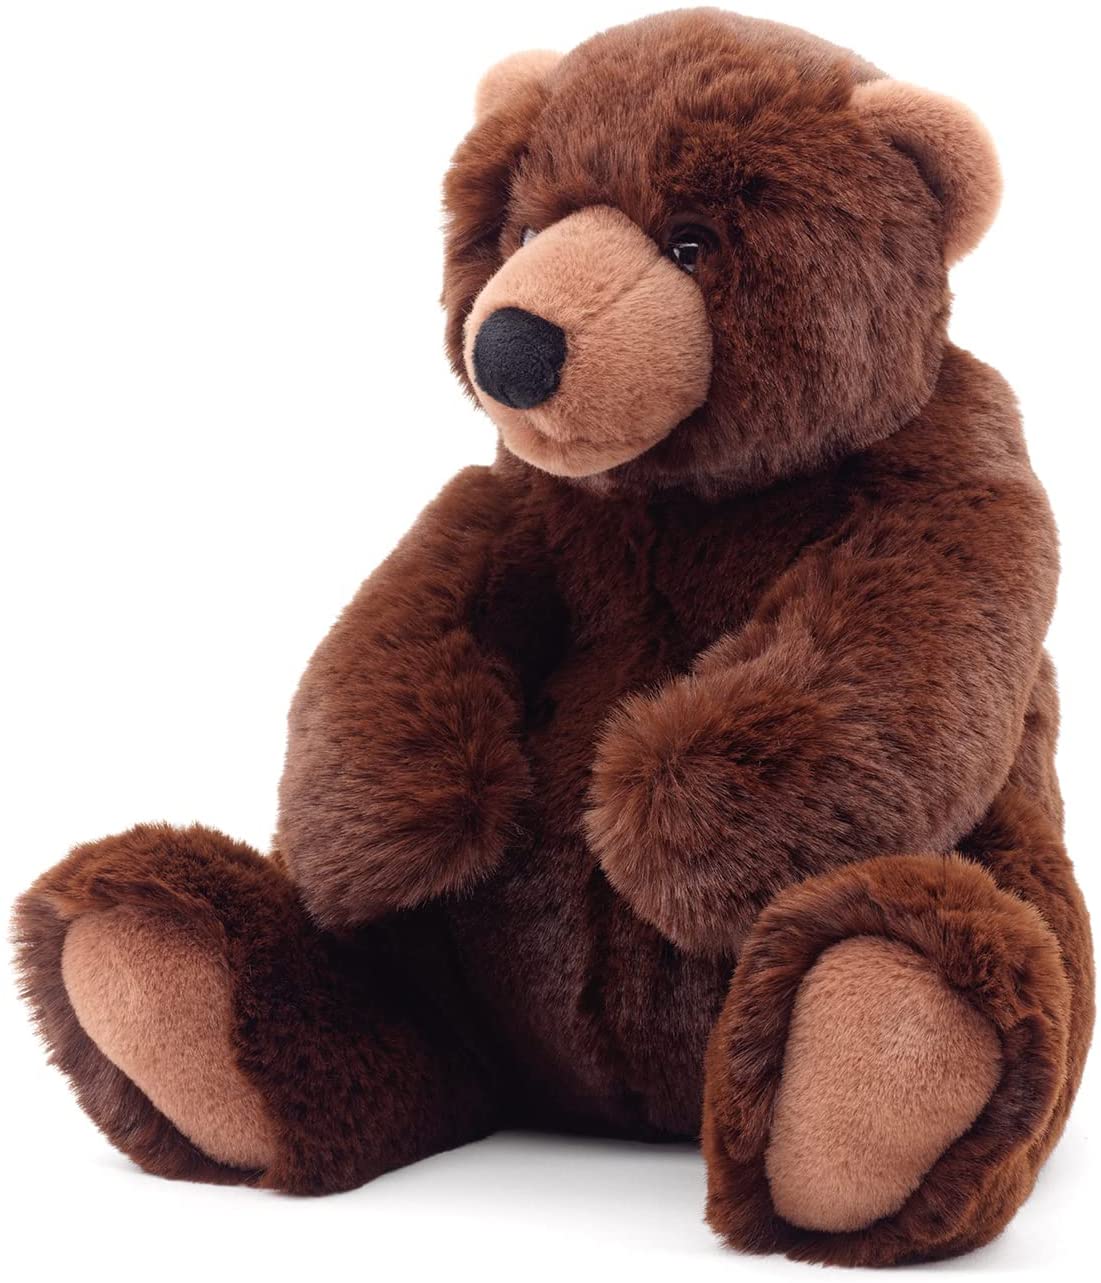 Uni-Toys - Braunbär klein, sitzend - "Yannie" - superweich - 21 cm (Höhe) - Plüsch-Bär, Teddy, Teddybär - Plüschtier, Kuscheltier 